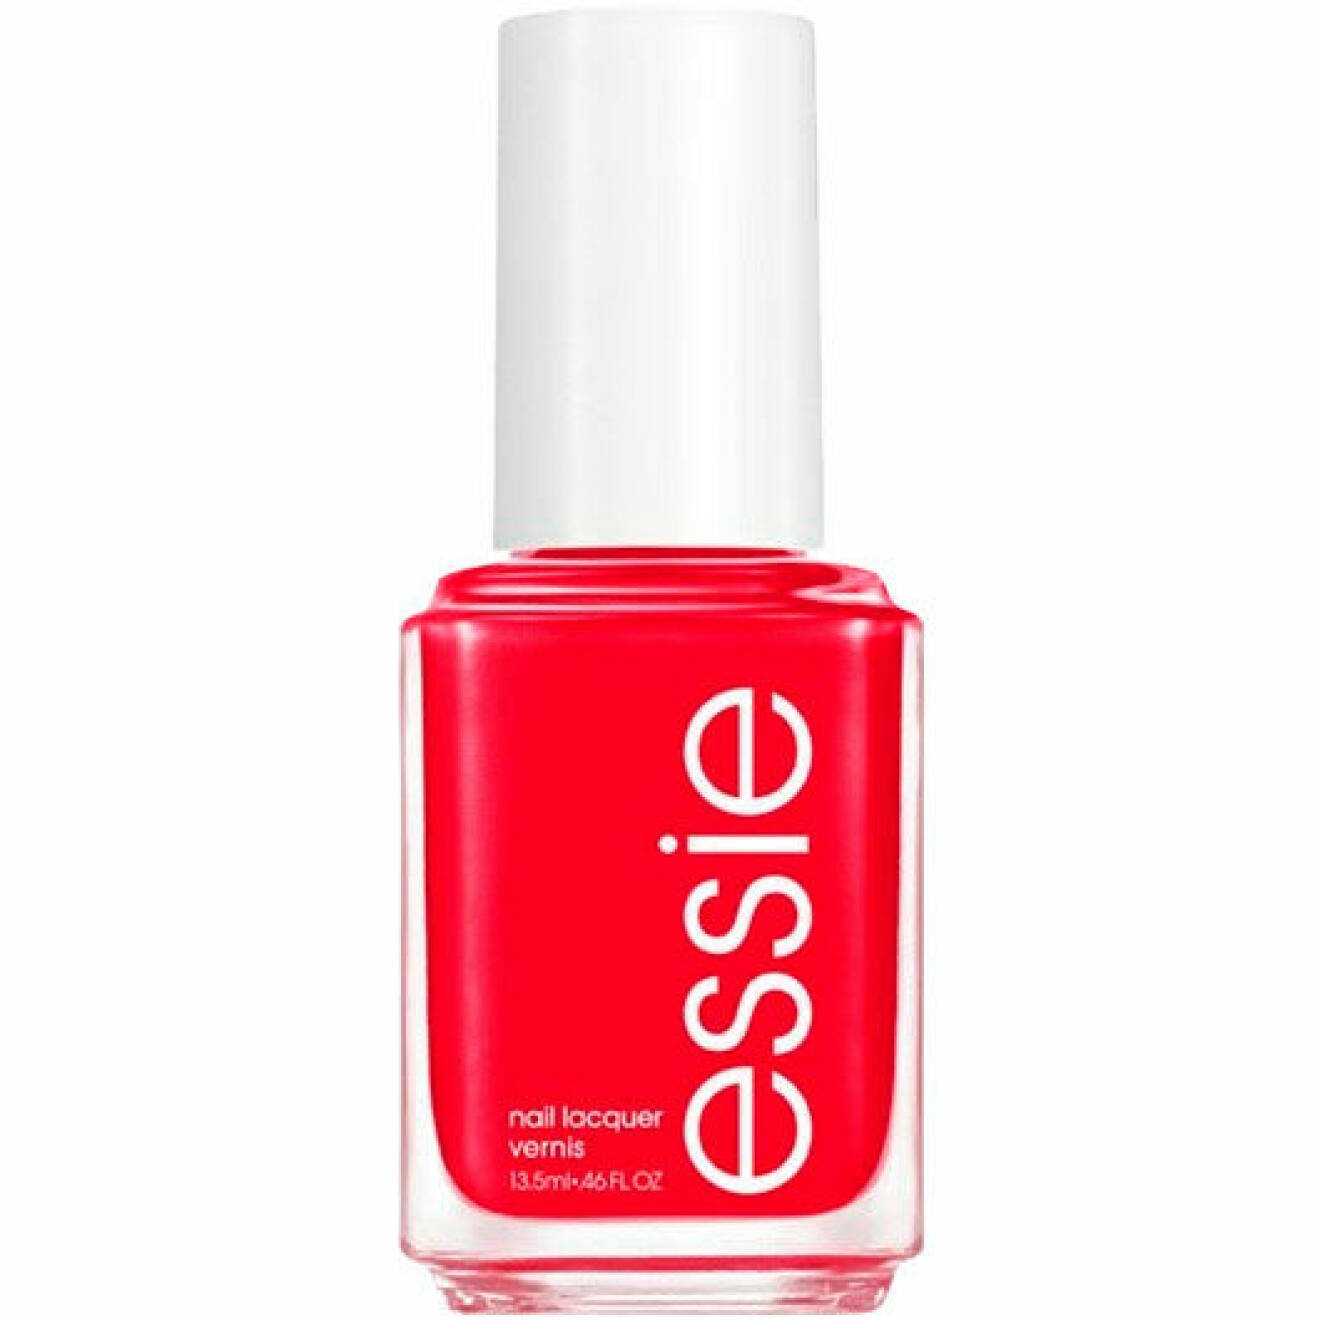 Röda nagellacket Nail Lacquer i färgen Too Too Hot, från Essie.